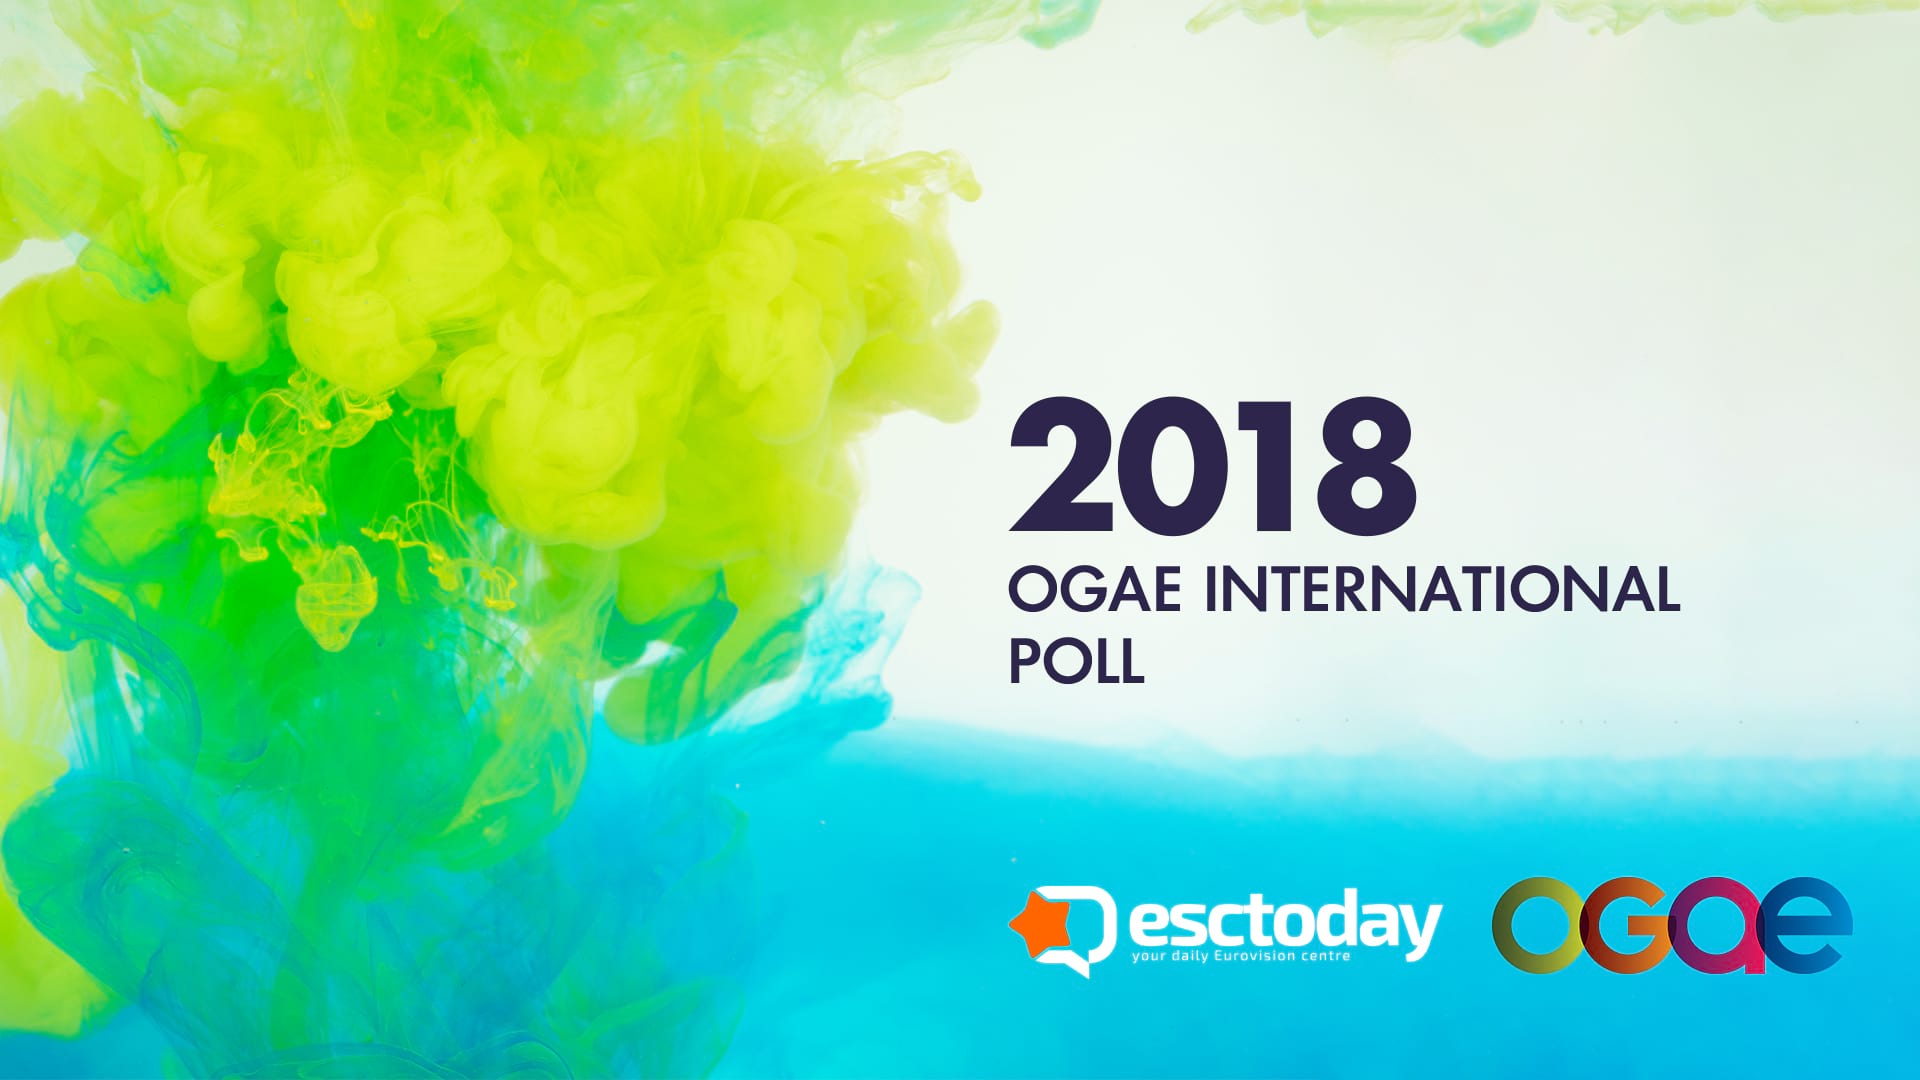 Eurovision Ogae Poll Andorra Calling Esctoday